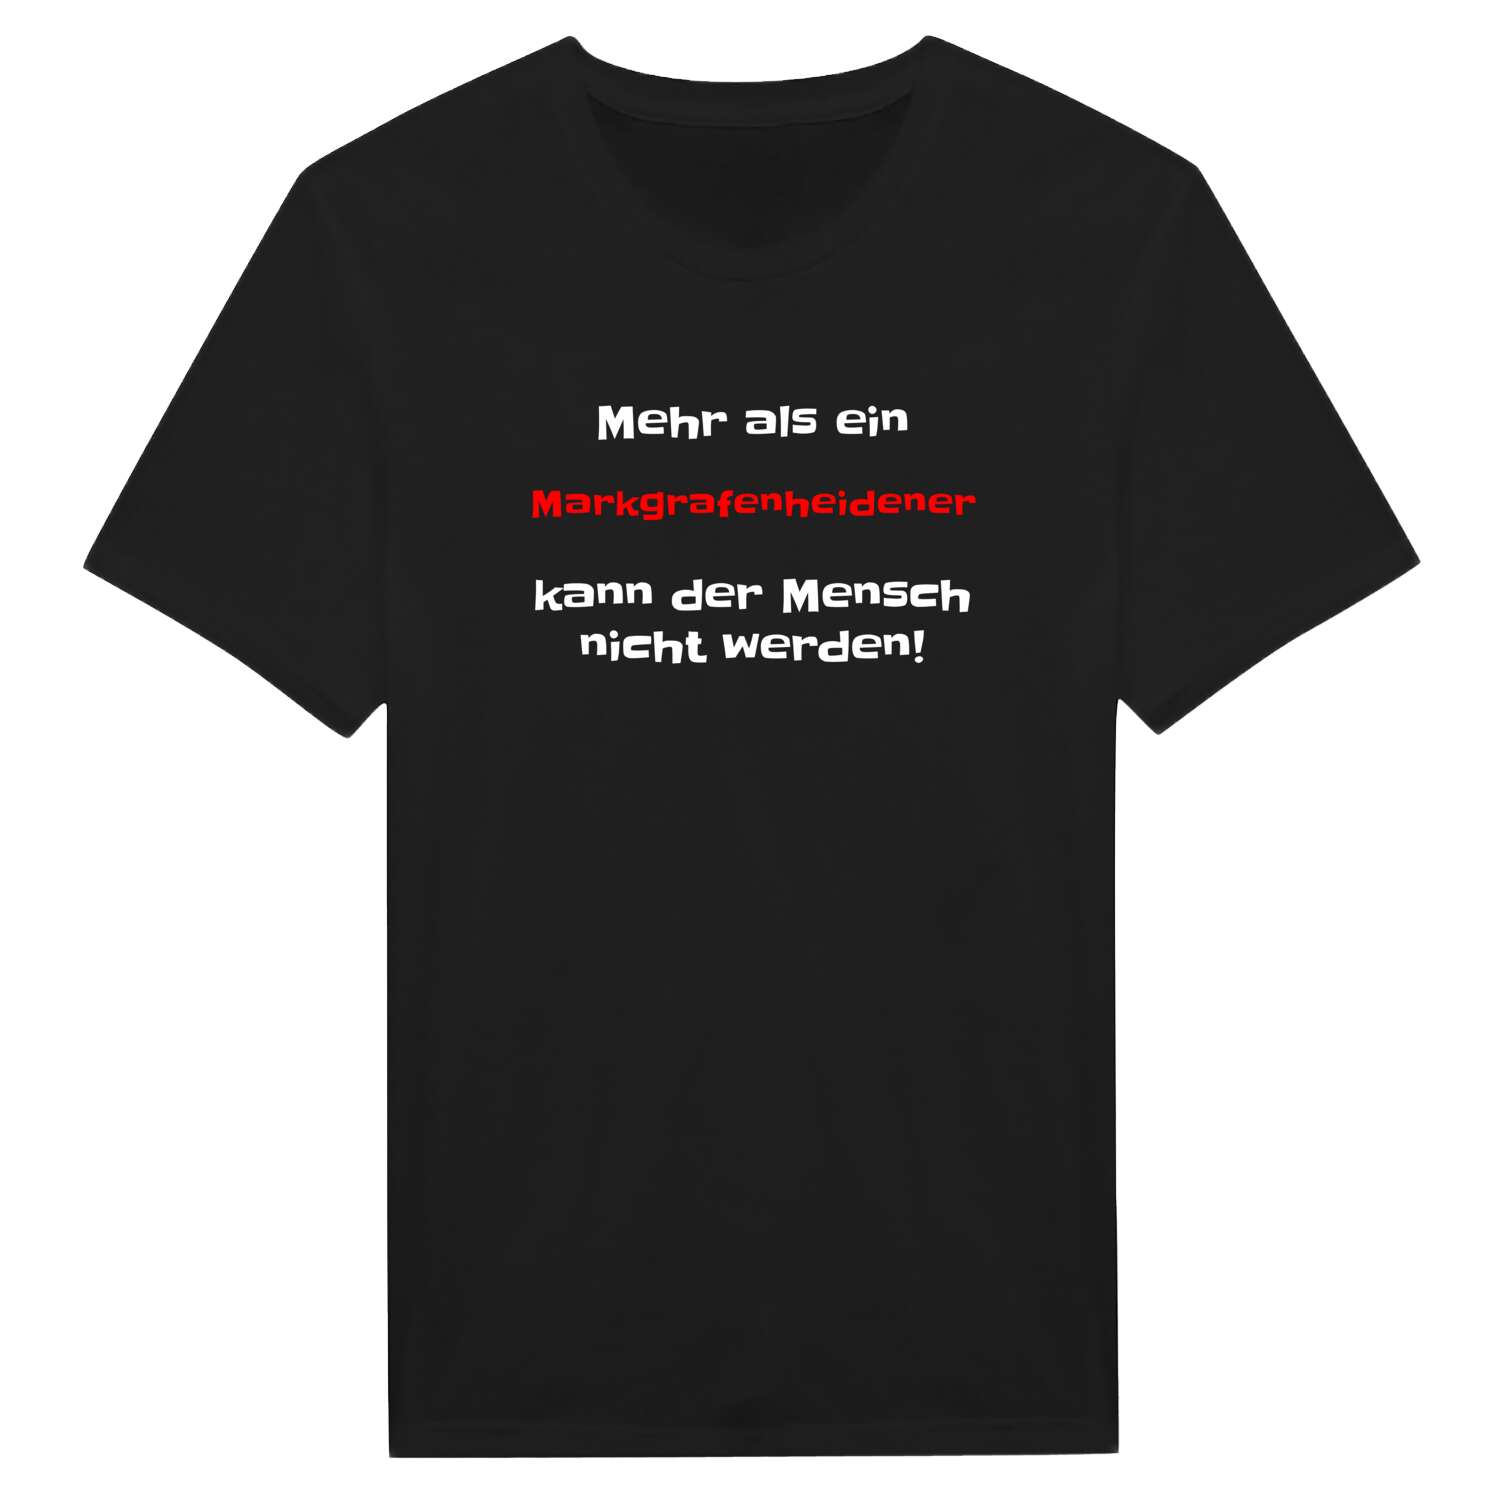 Markgrafenheide T-Shirt »Mehr als ein«